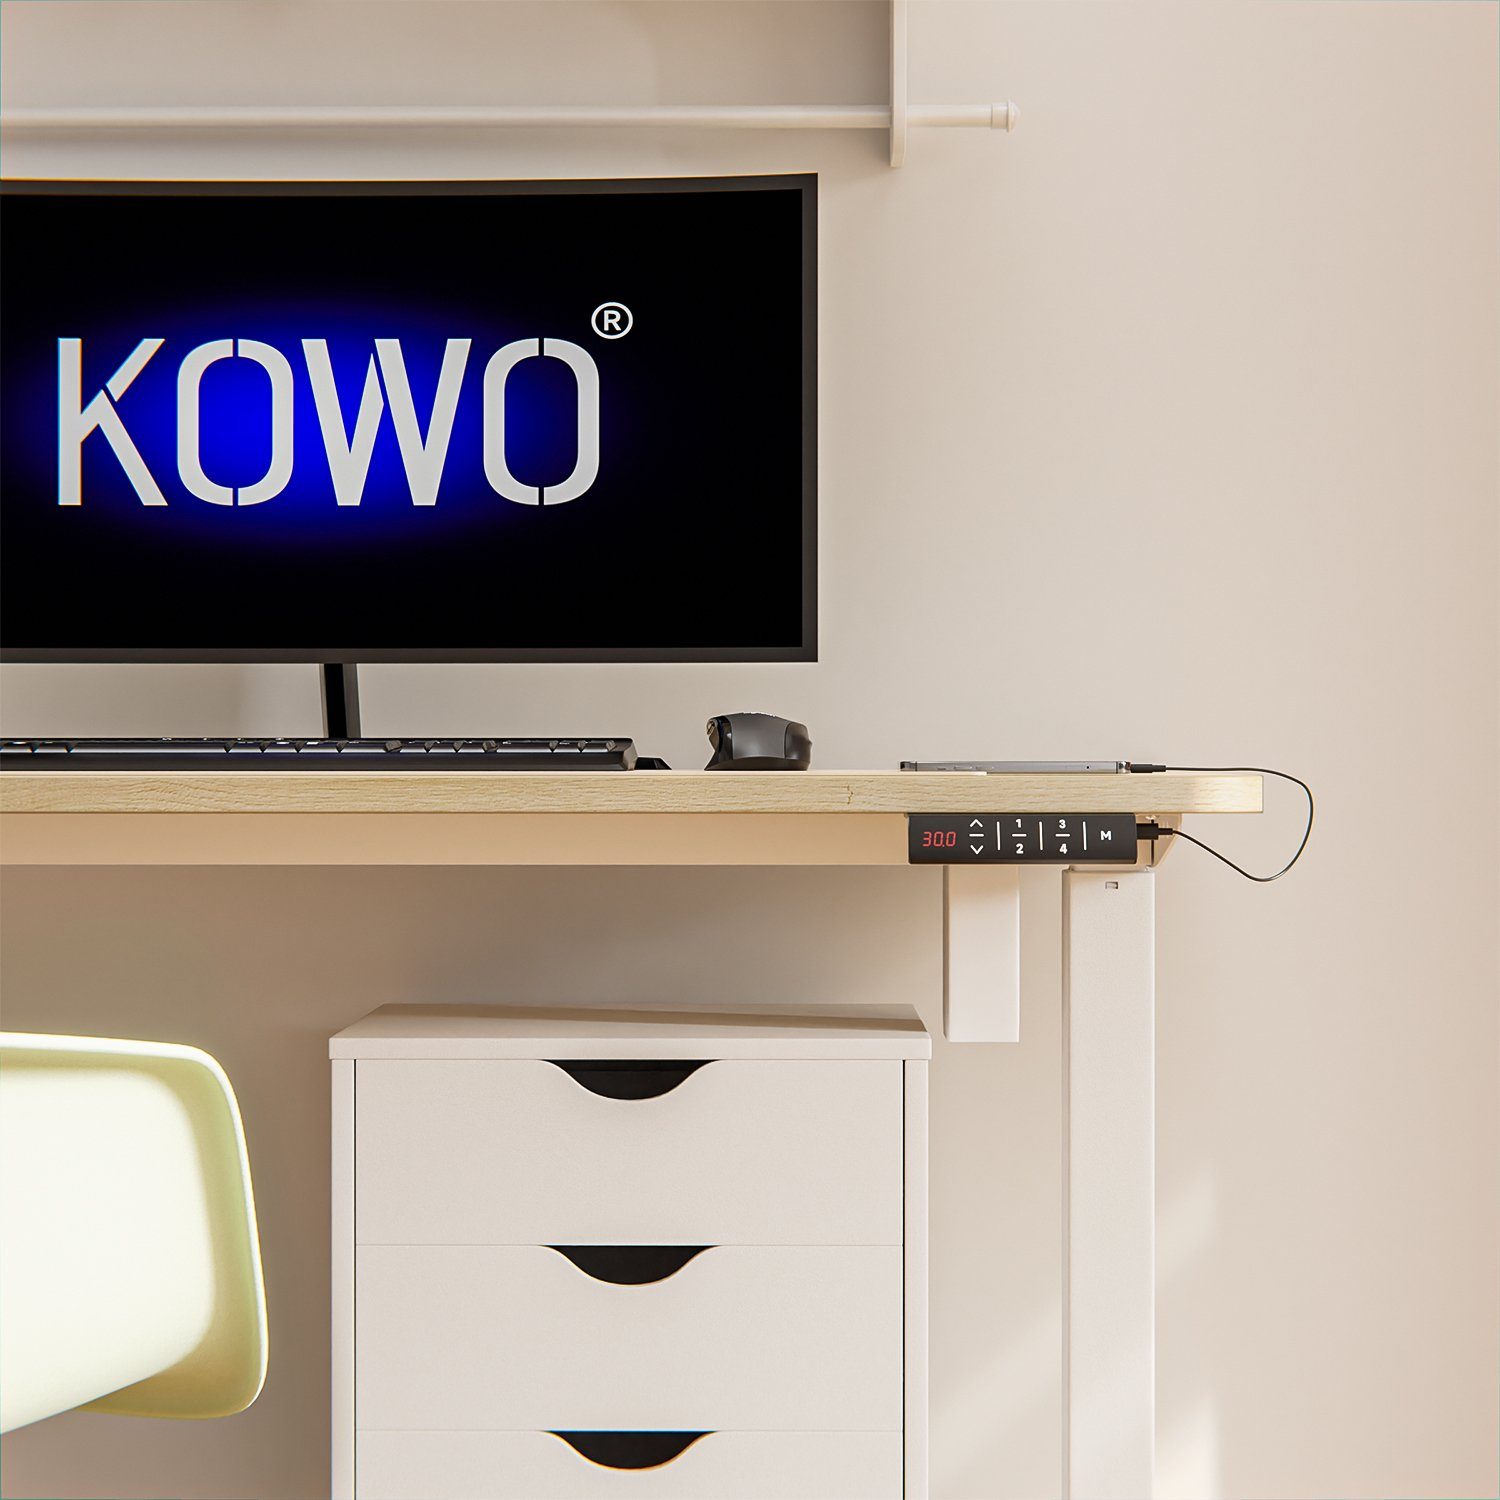 KOWO Schreibtisch Höhenverstellbarer C Ladegerät mit Bürotisch iPad, Netzteil iPhone, Handy für und Tischgestell, Eiche USB MacBook, 160 Schreibtisch USB mit cm